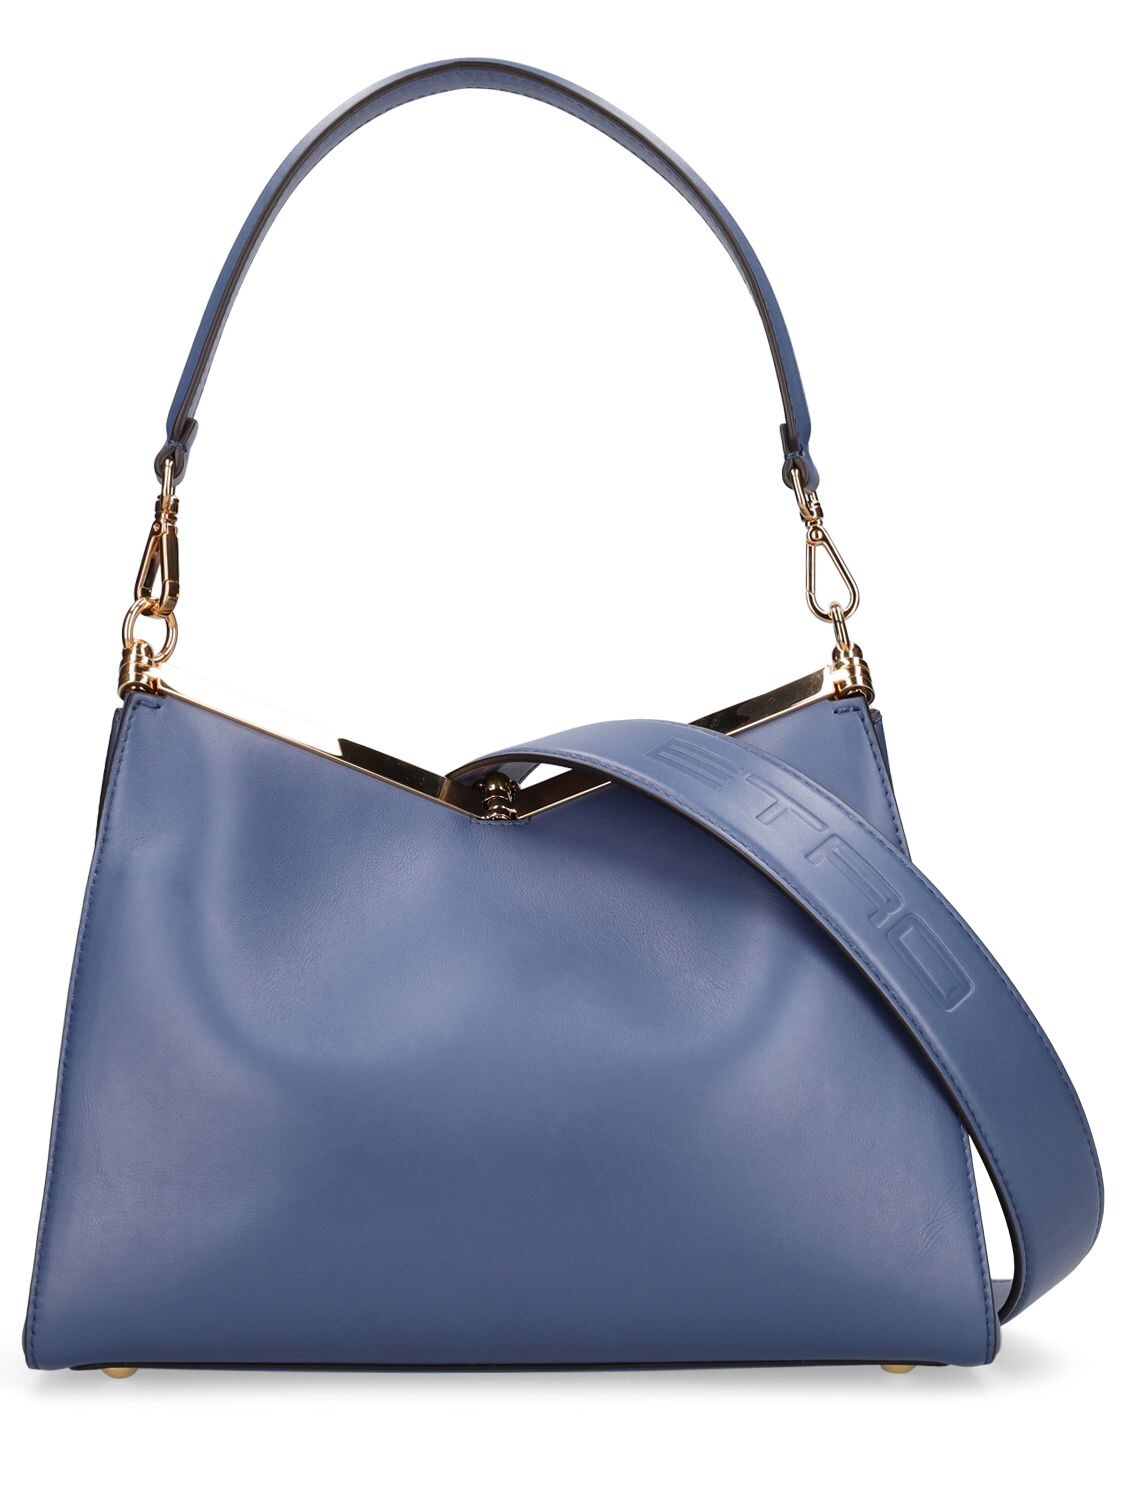 Blue Vela small leather shoulder bag, Etro